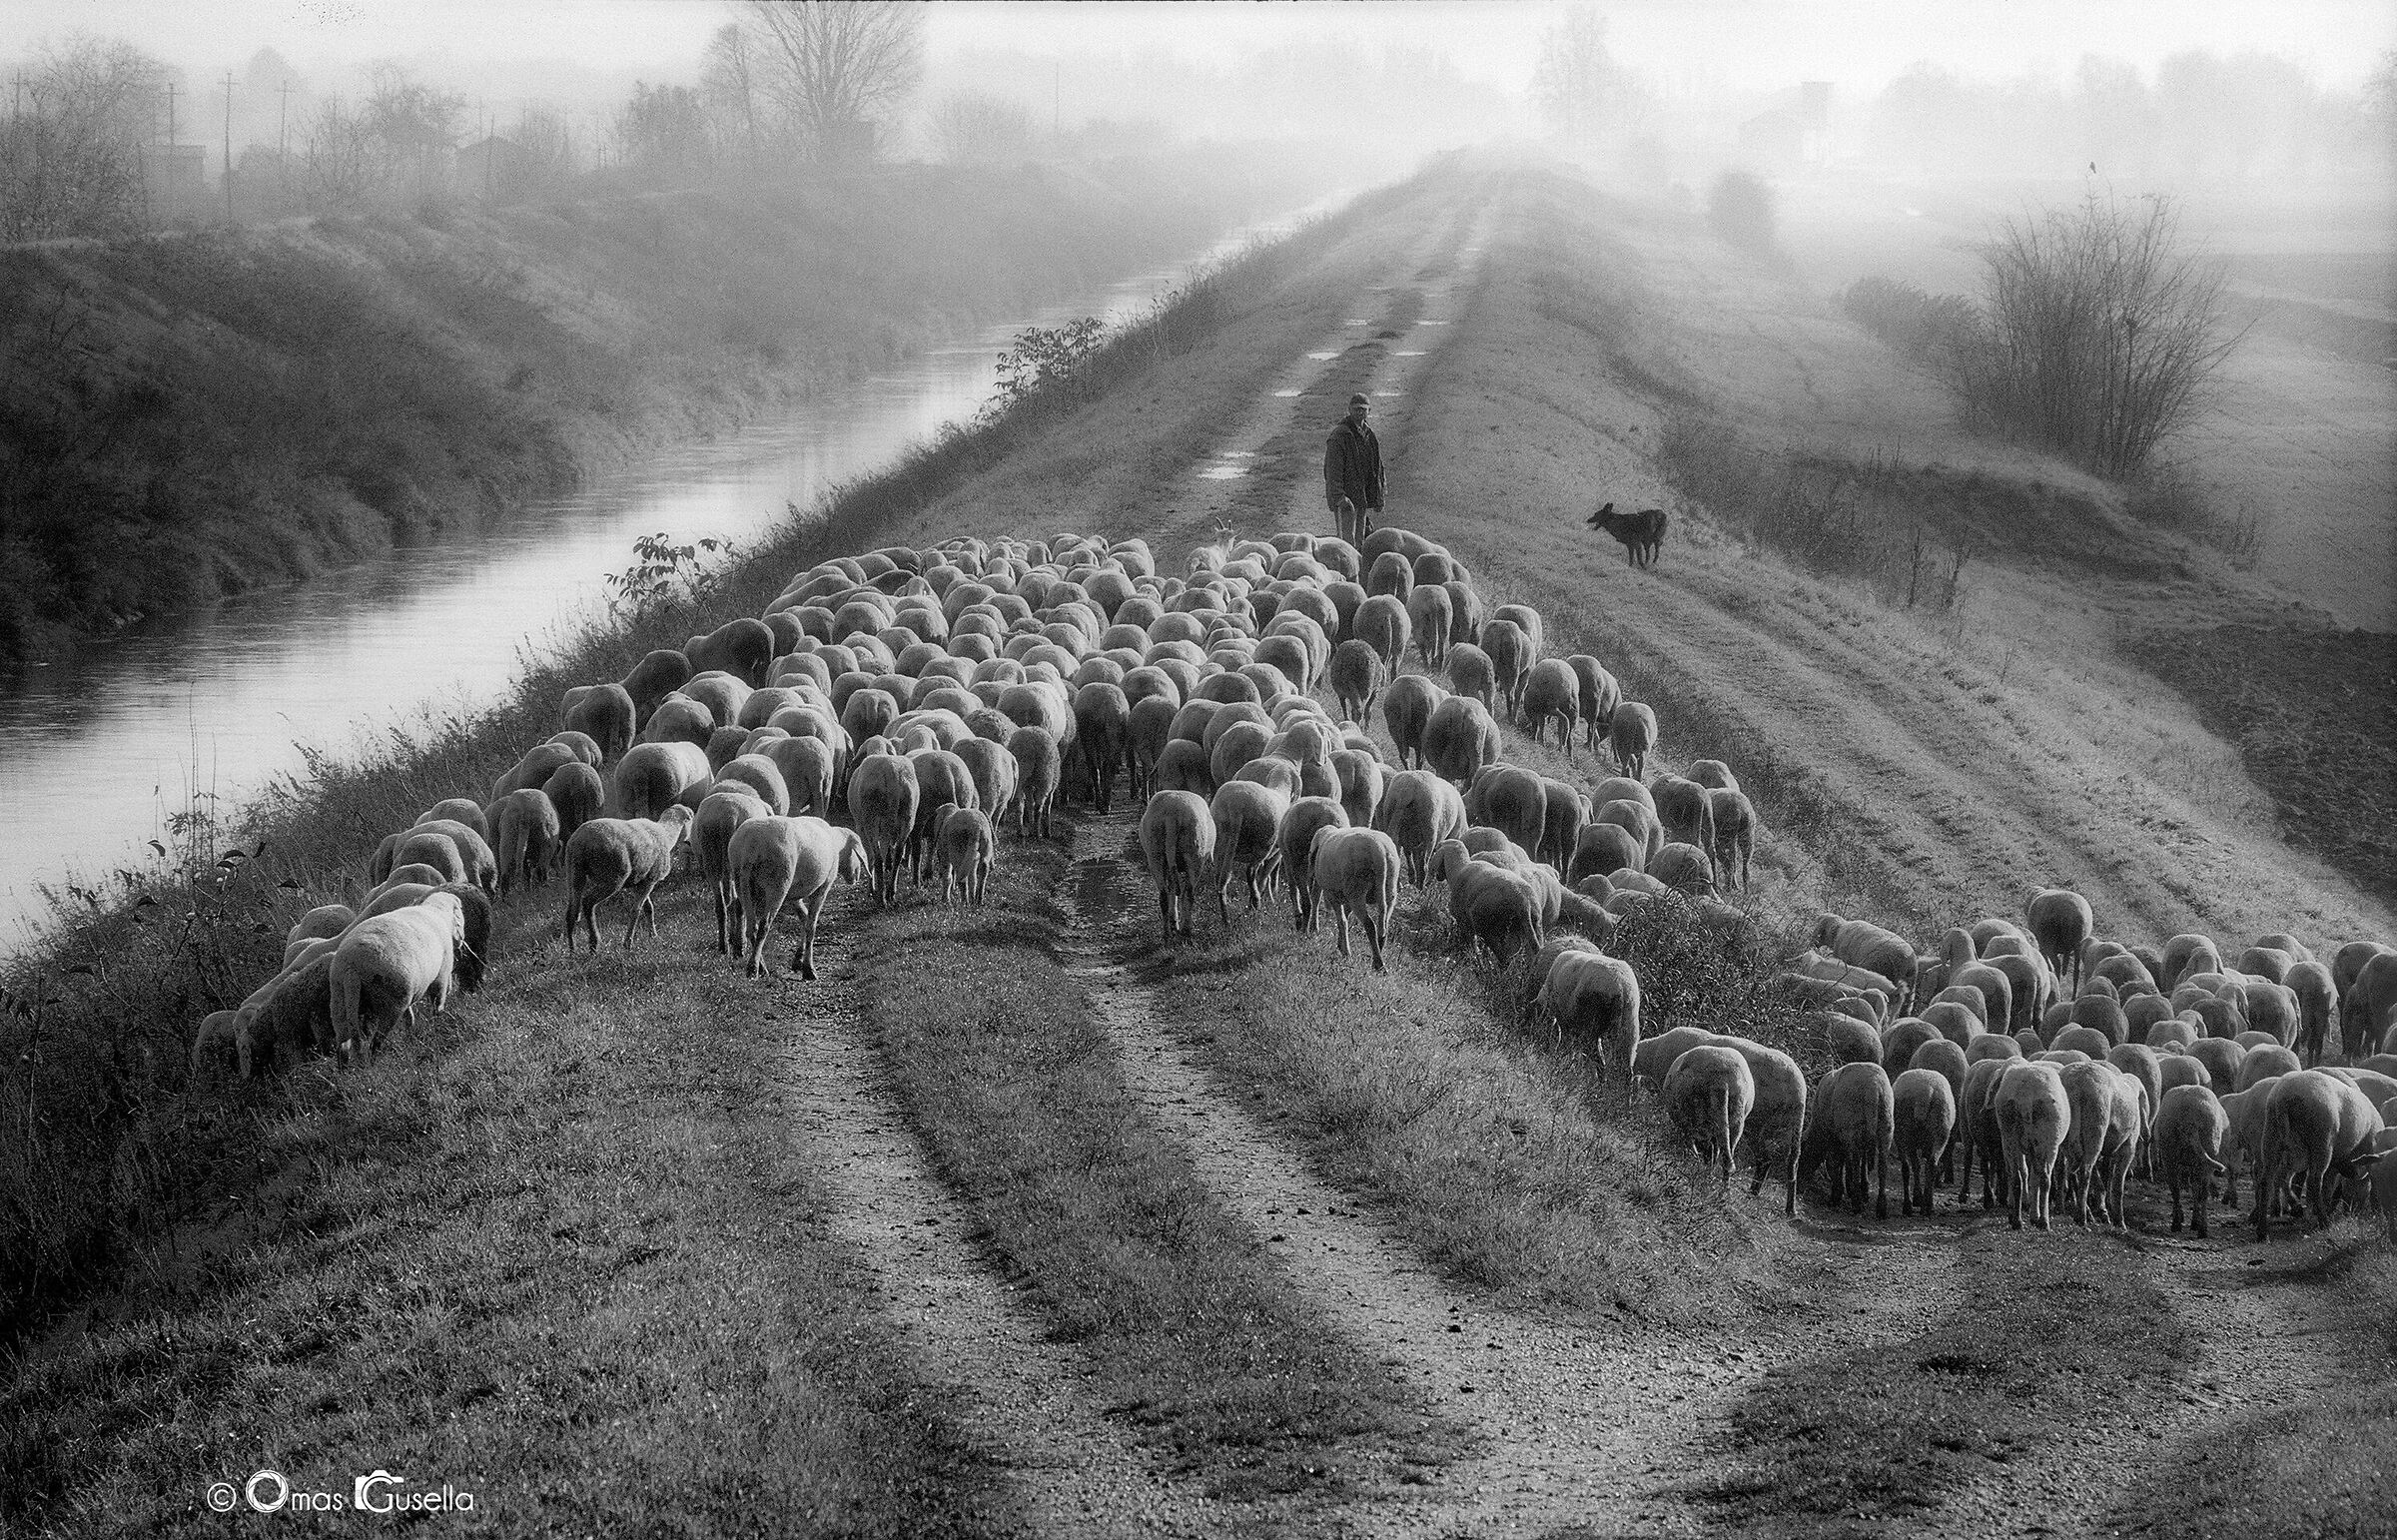 The shepherd among the "Basse"...